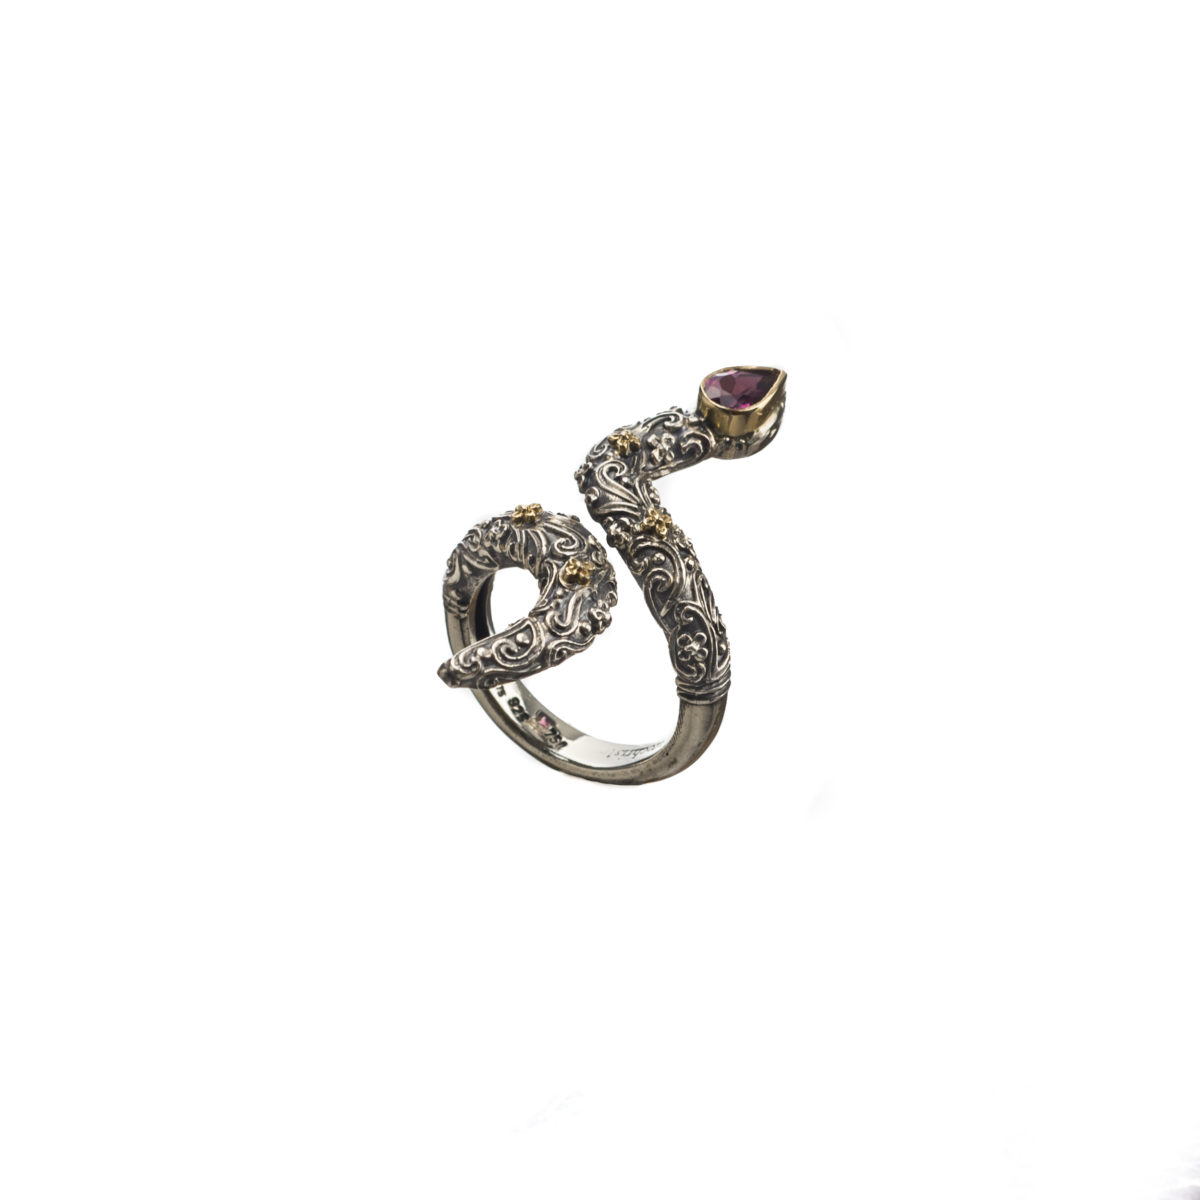 Εντυπωσιακό δαχτυλίδι Gerochristos σε σχήμα φιδιού στολισμένο με ένα πανέμορφο Ροδαλίτη